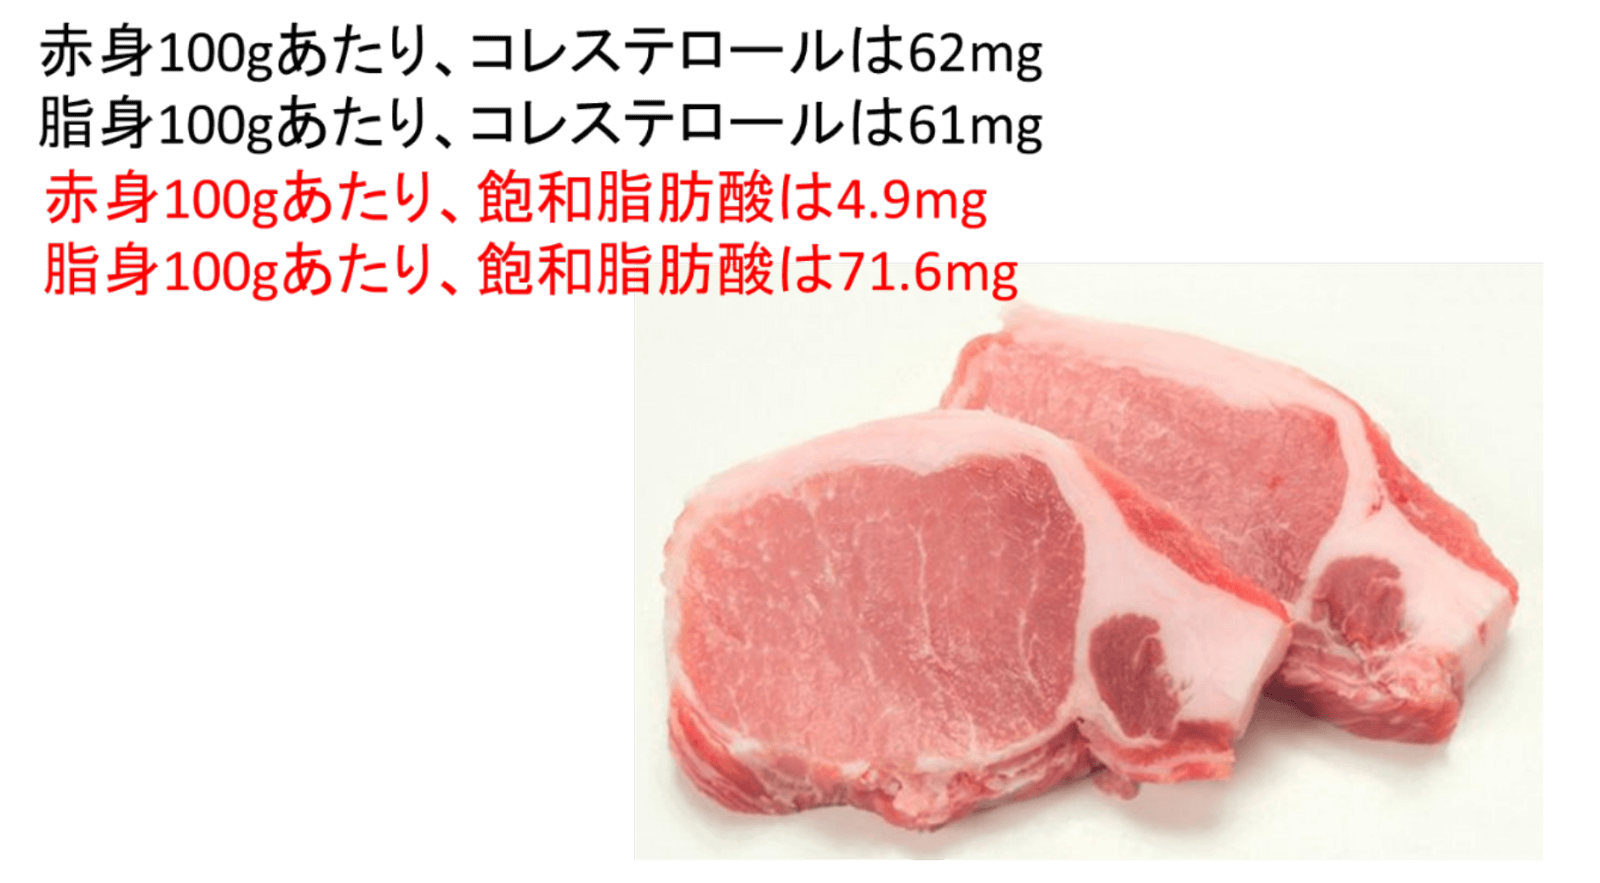 豚ロース肉の赤身と脂身に含まれるコレステロール量は殆ど同じ